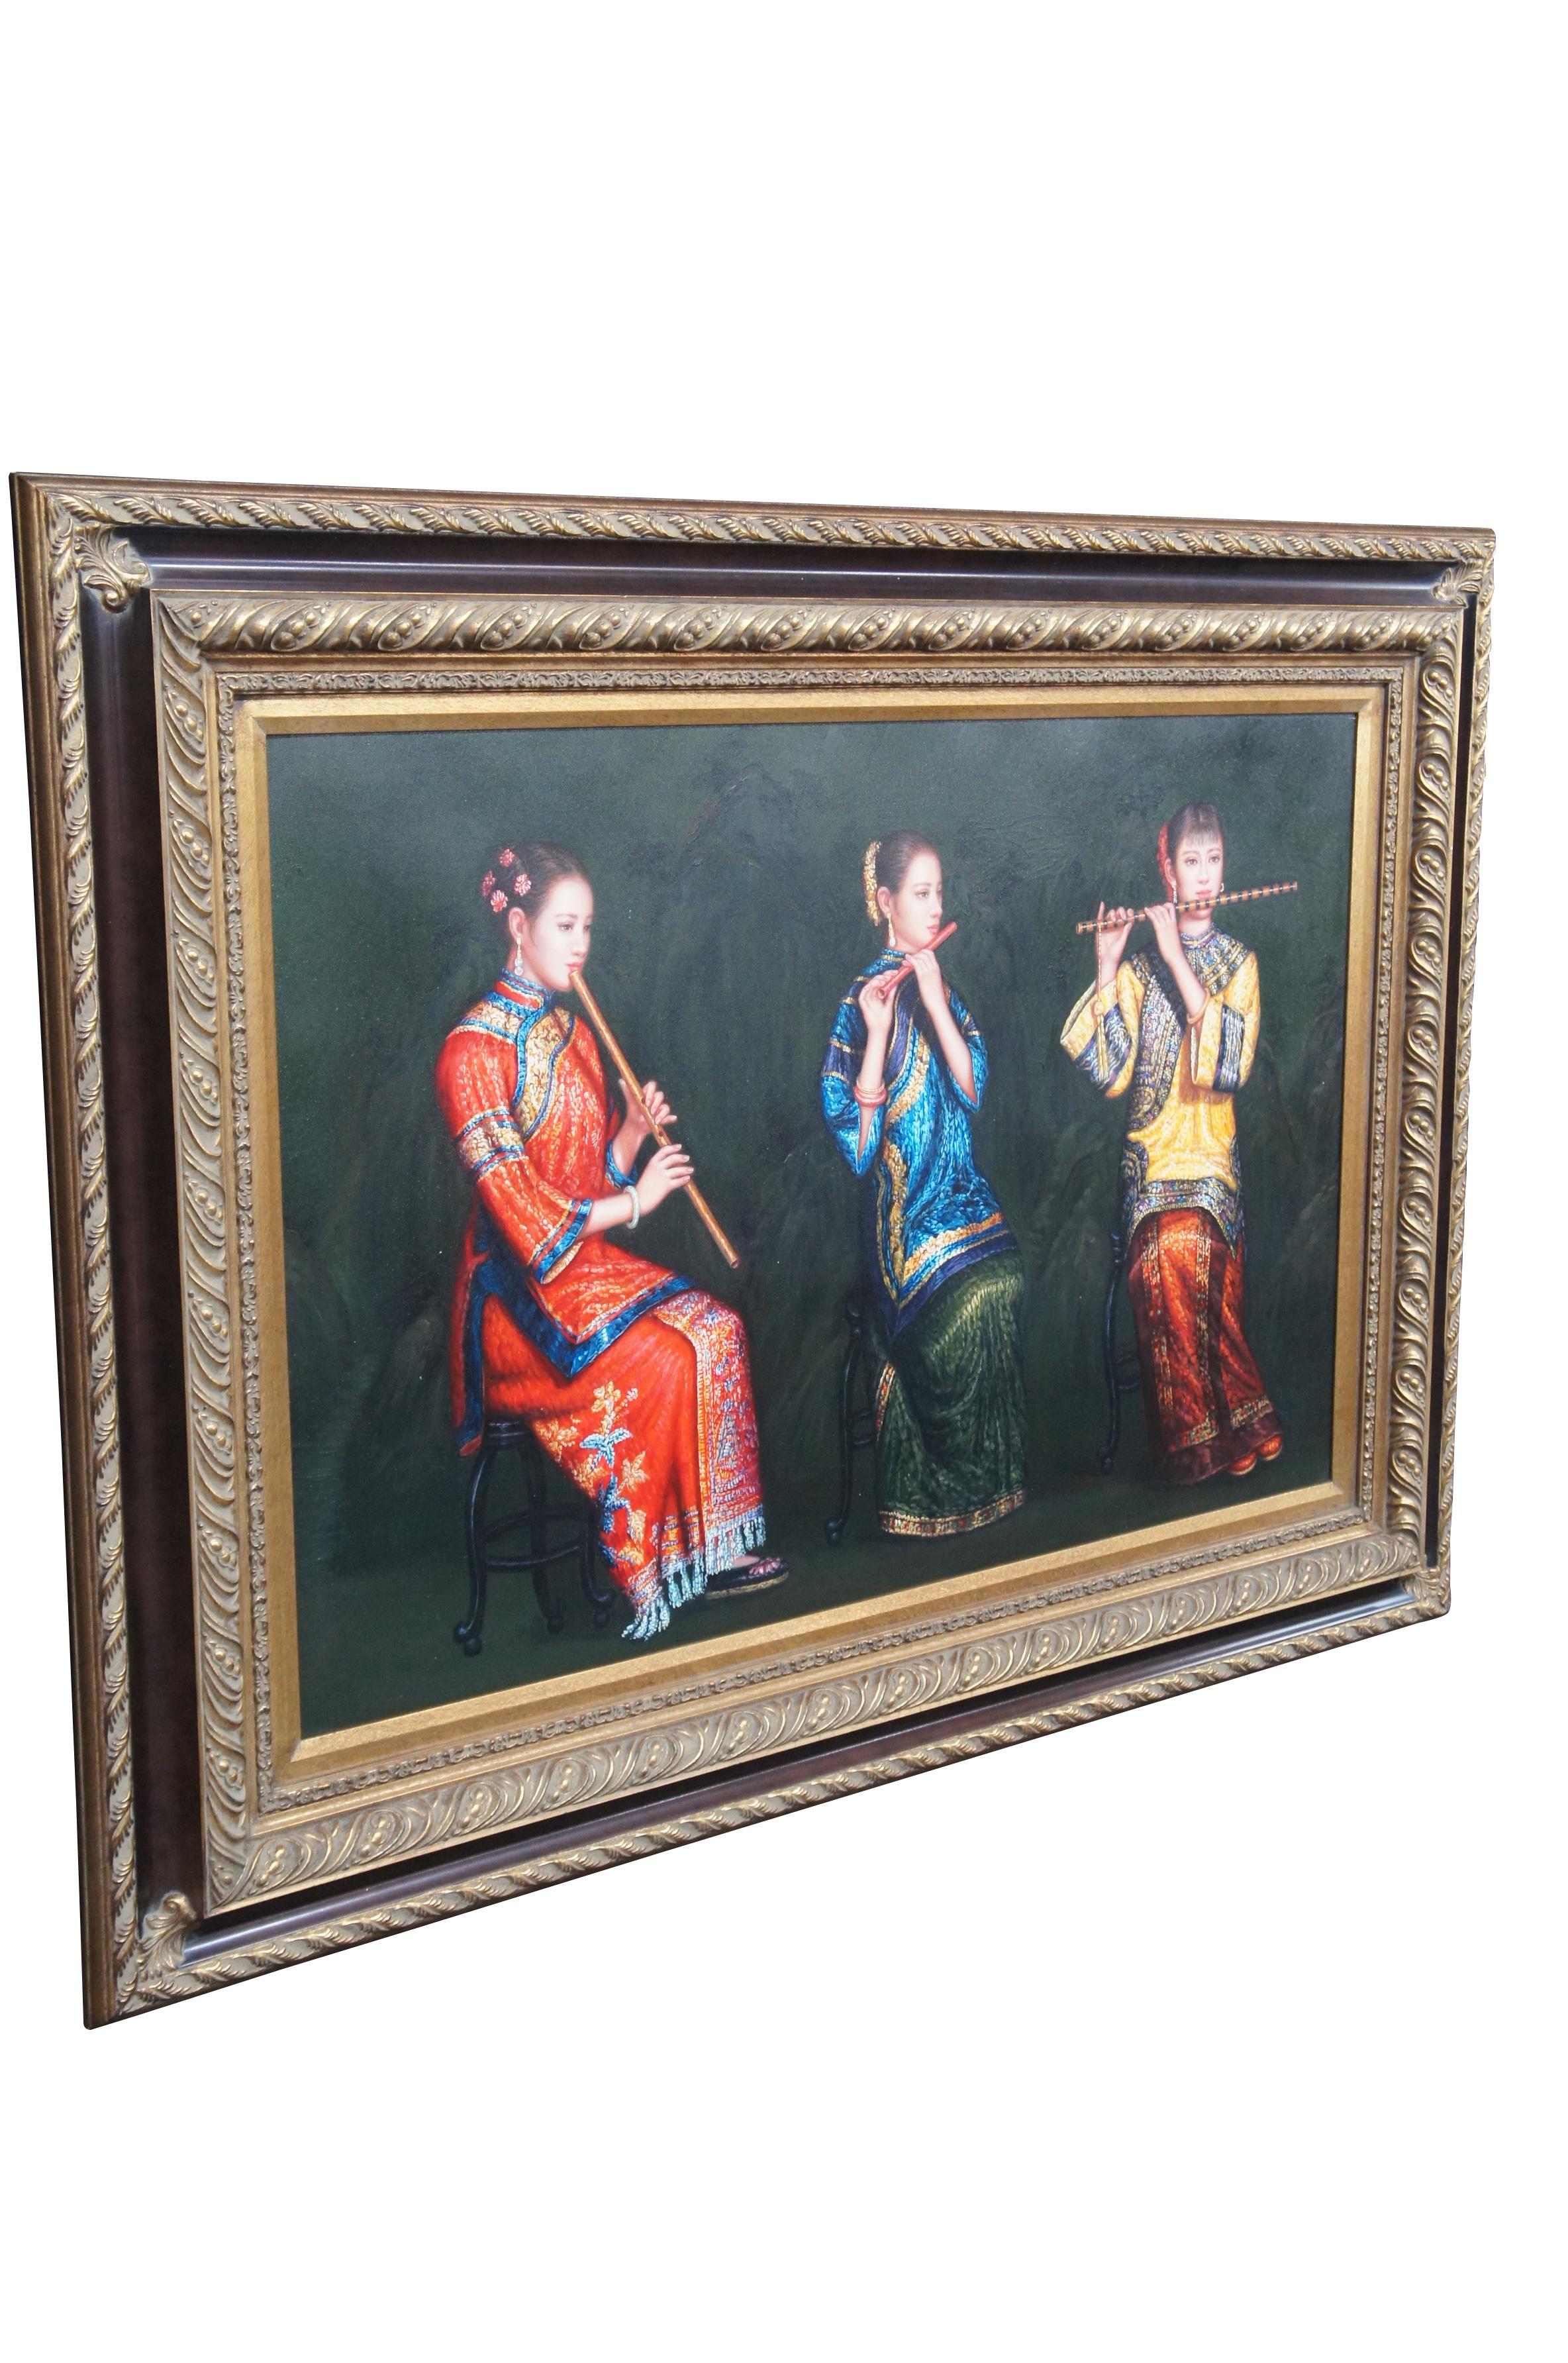 Vintage Trio der chinesischen Frau spielt Flöten Ölgemälde auf Leinwand nach Chen Yifei.  Drei junge Musiker in traditioneller Hofkleidung spielen auf Dizi / Bambusflöten.

Chen Yifei (chinesisch: 陈逸飞; 12. April 1946 - 10. April 2005) war ein